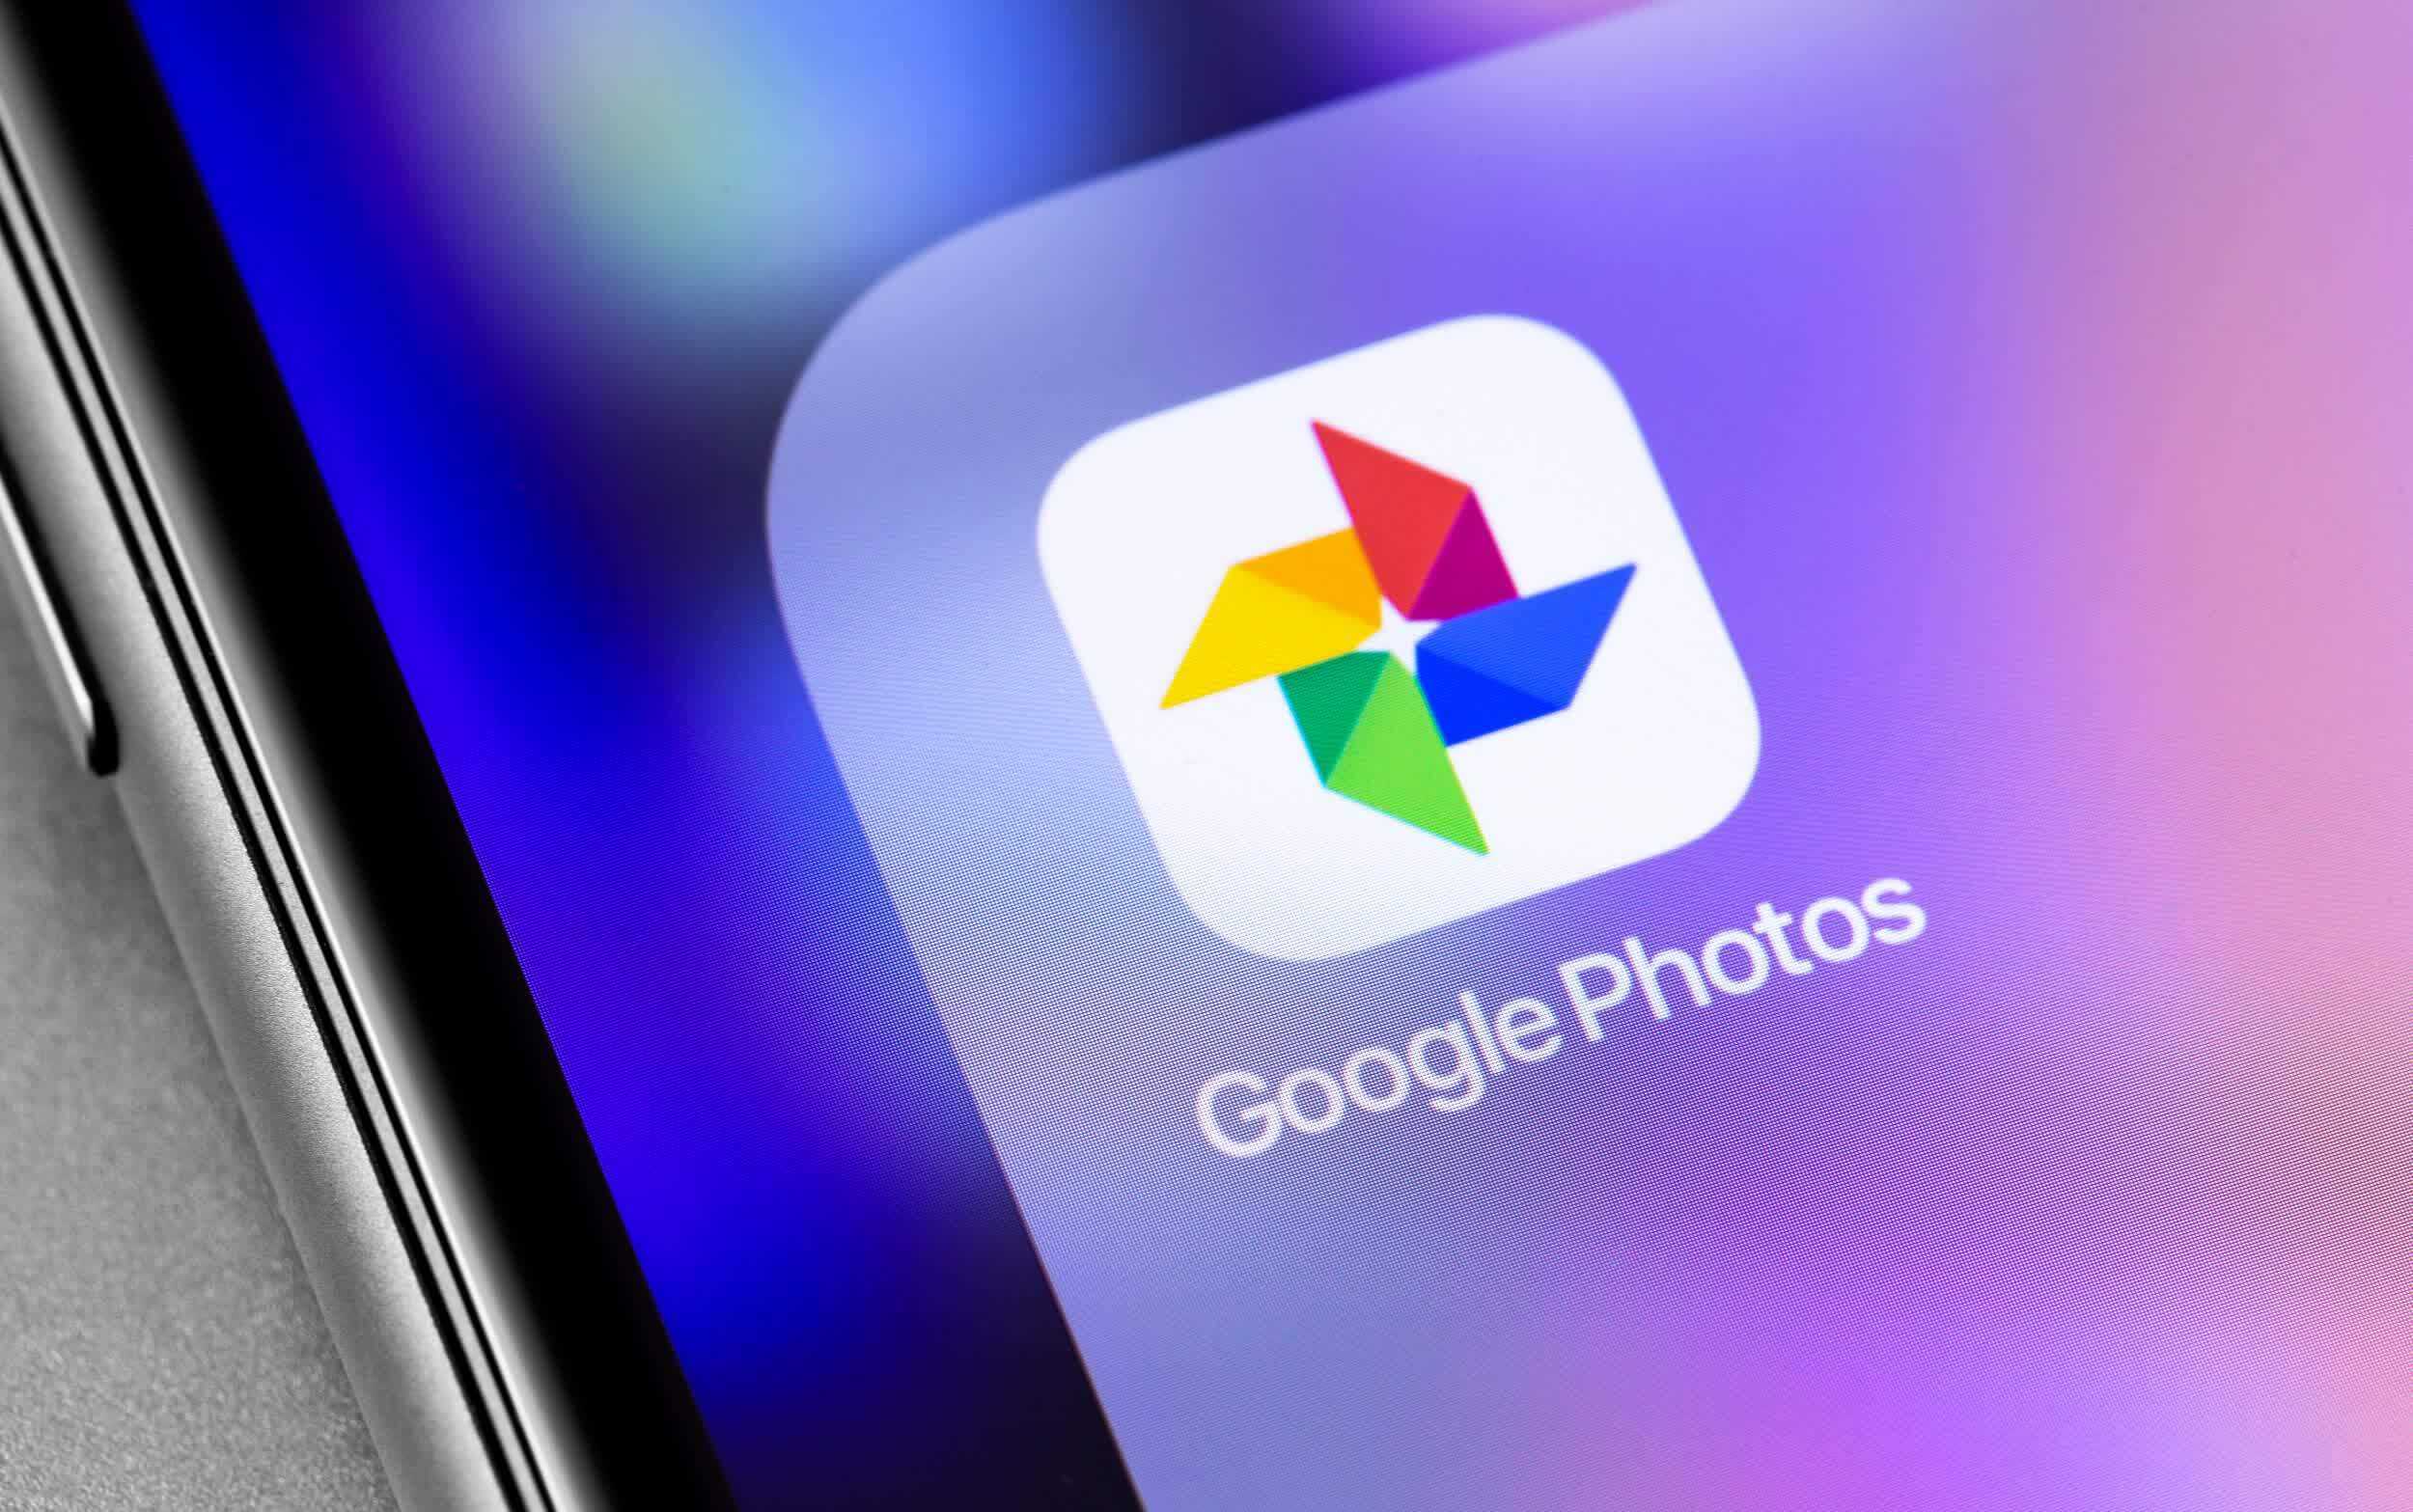 Лучшие альтернативы google фото в 2021 году - андроид эльф